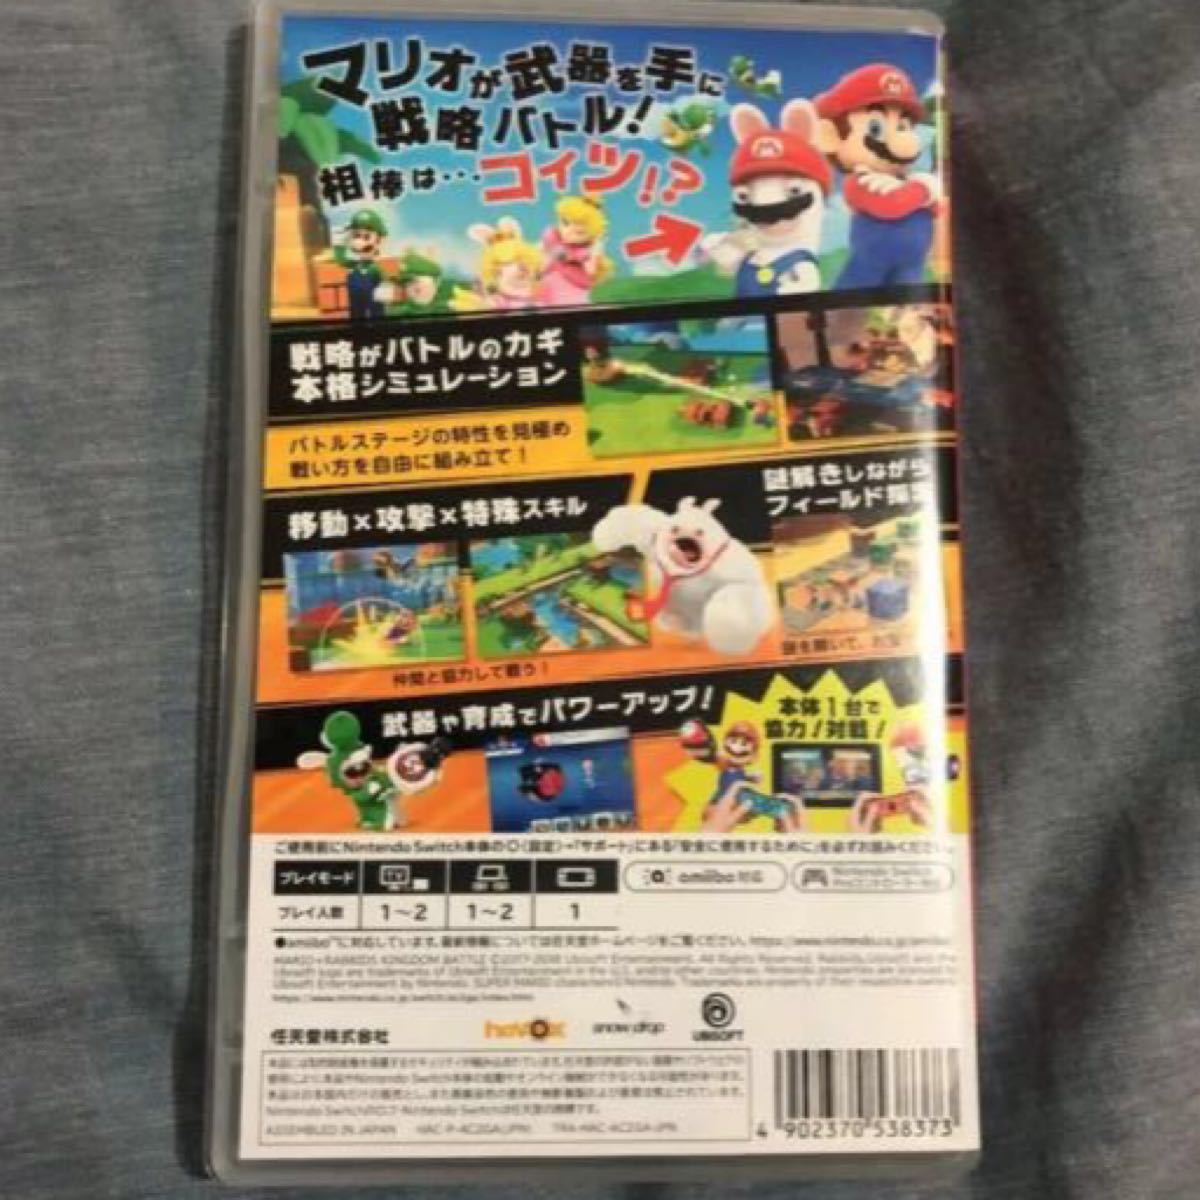 マリオ+ラビッツキングダムバトル Nintendo Switch 任天堂スイッチ ニンテンドースイッチソフト